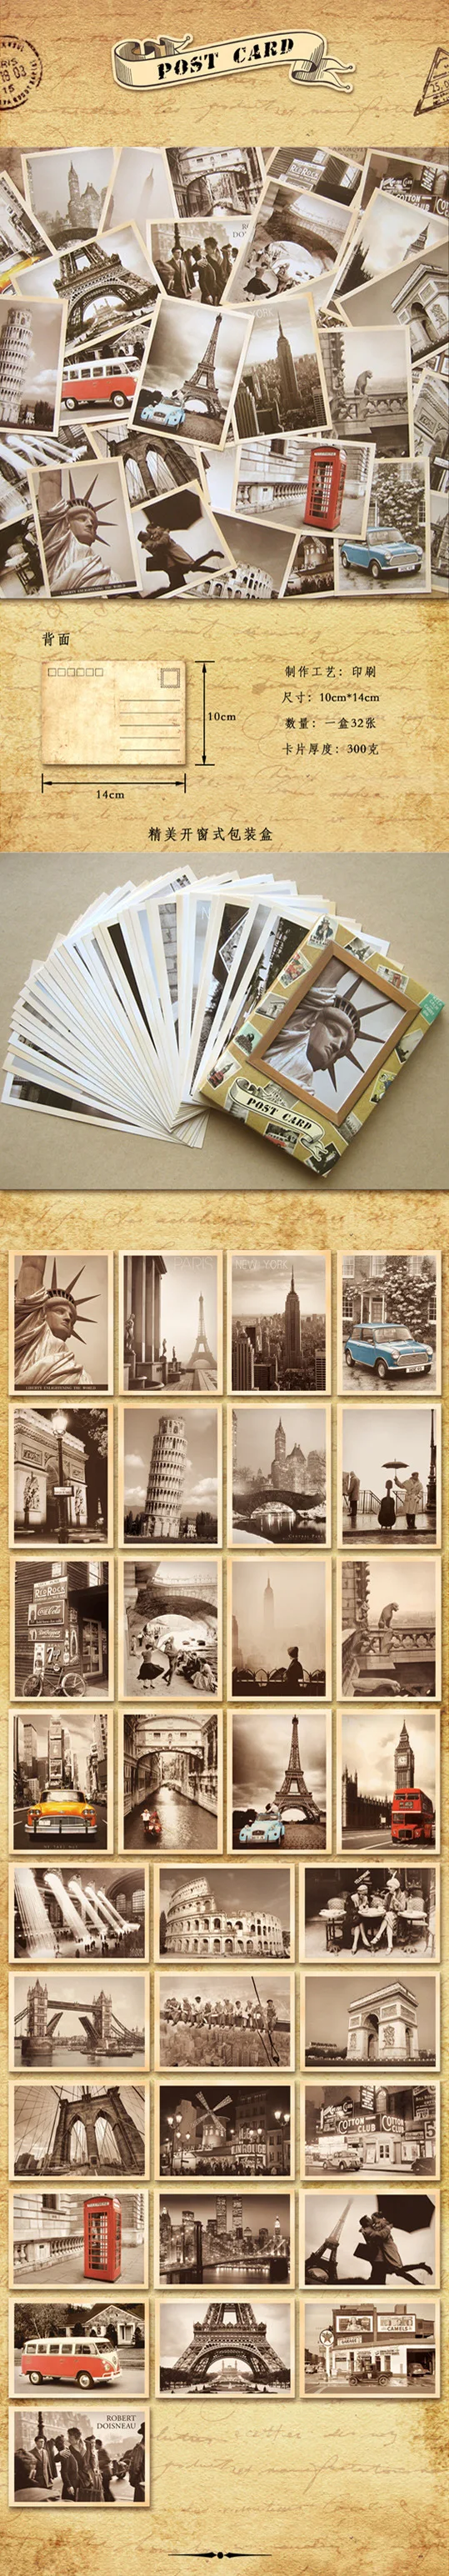 Коллекционная открытка винтажная бумажная Закладка персонажи мультфильмов Набор карточек